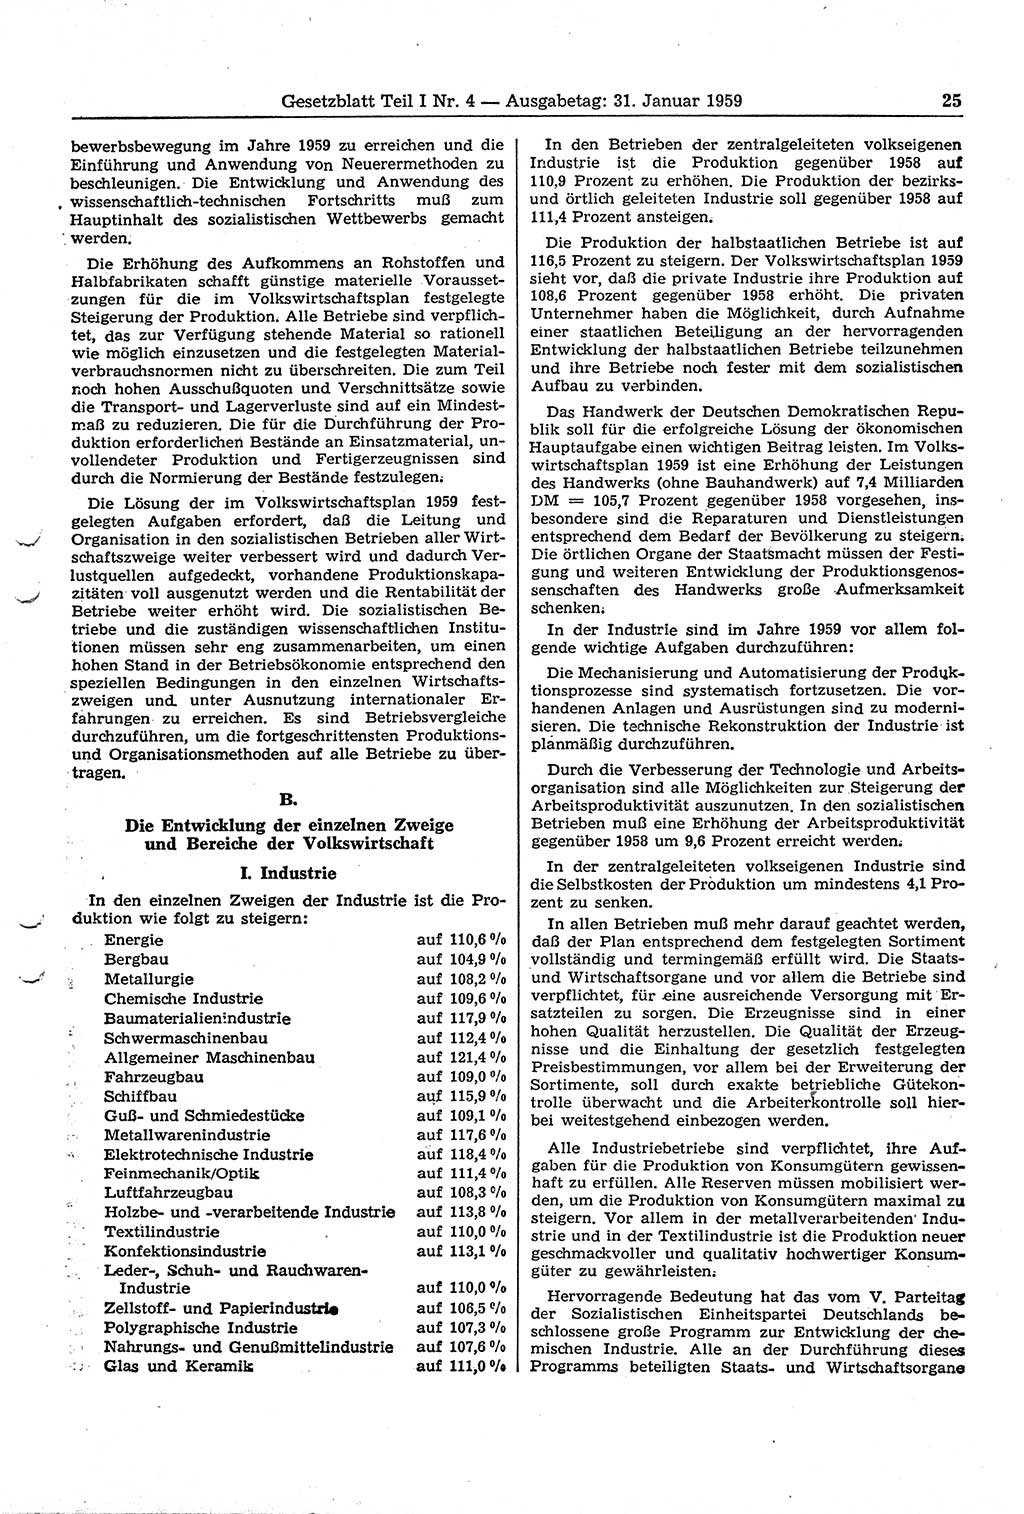 Gesetzblatt (GBl.) der Deutschen Demokratischen Republik (DDR) Teil Ⅰ 1959, Seite 25 (GBl. DDR Ⅰ 1959, S. 25)